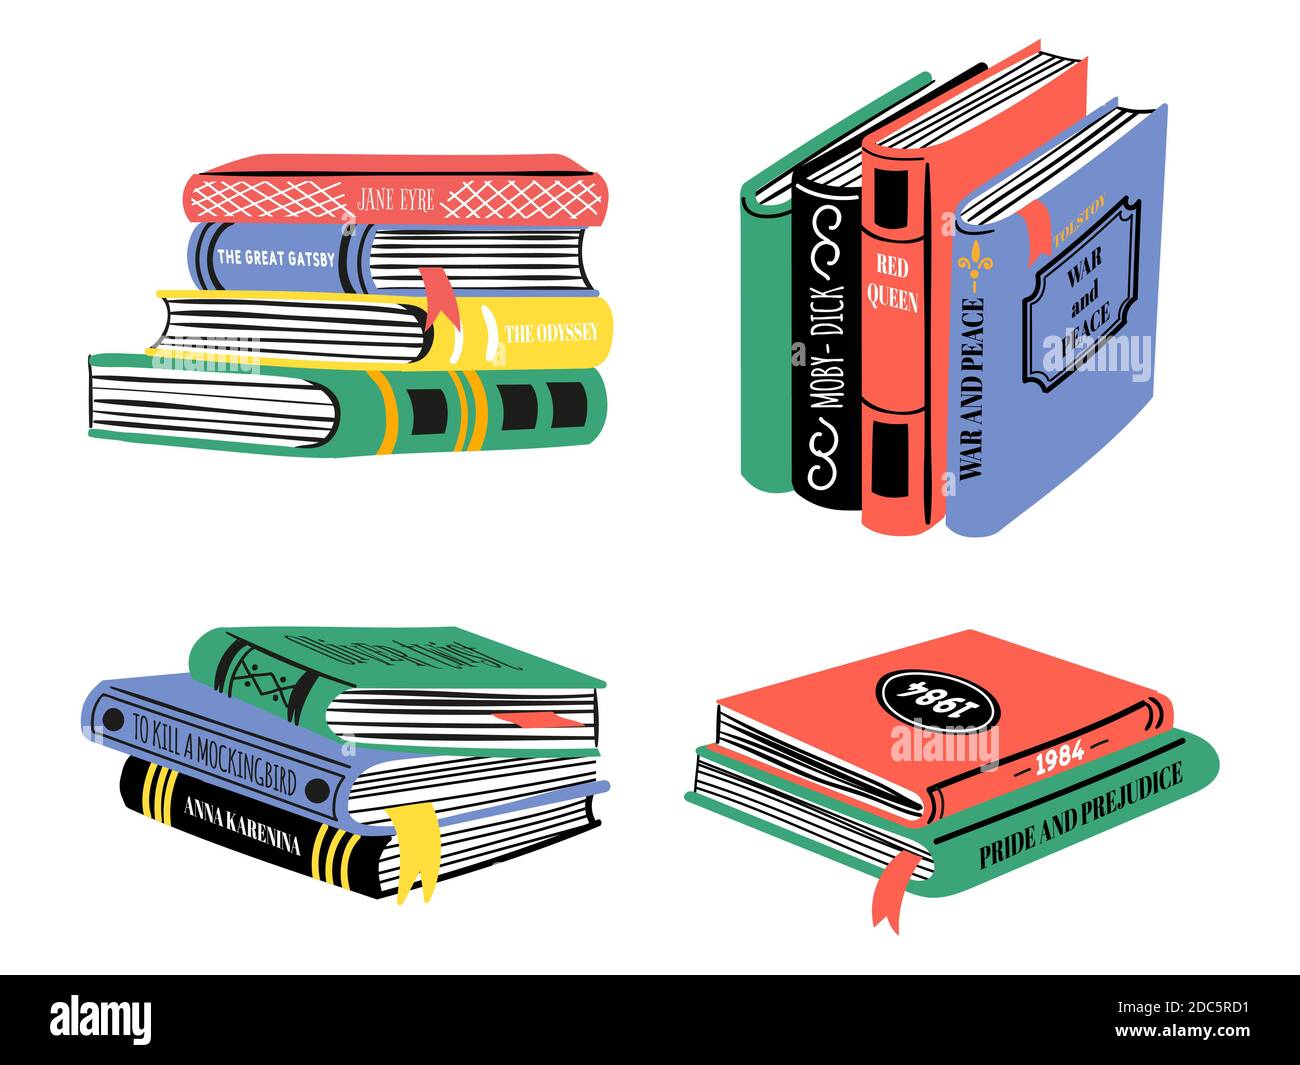 Stapel von Bestsellerbüchern. Handgezeichnete klassische Literaturstapel. Beliebtes Buchdesign für Bibliothek oder Buchhandlung. Doodle Bildung Vektor-Set Stock Vektor